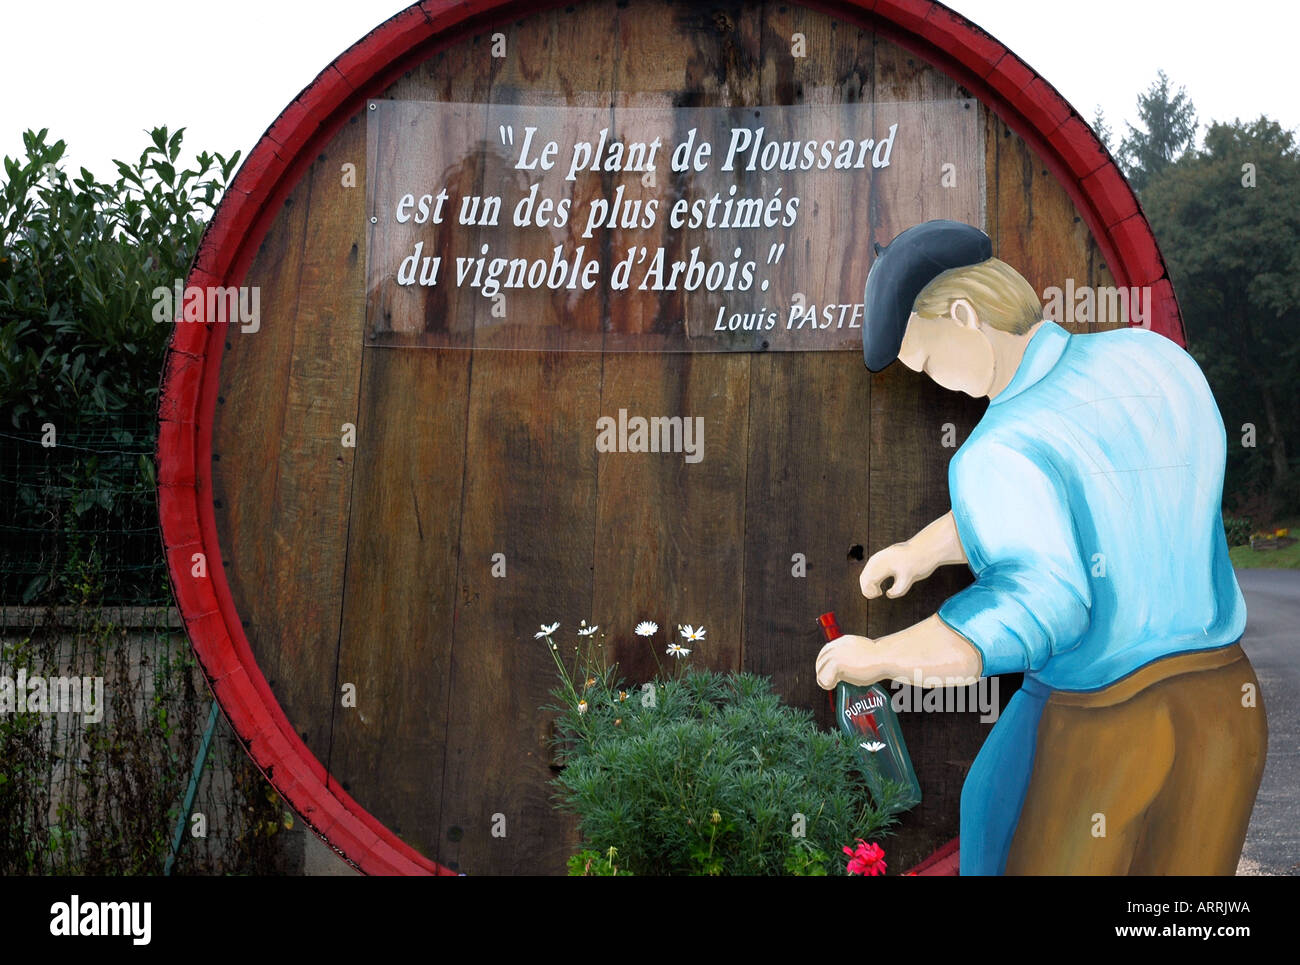 En la aldea de jura de vinificación Pupillin un barril muestra una cita de Louis Pasteur sobre los méritos de la uva Ploussard local Foto de stock